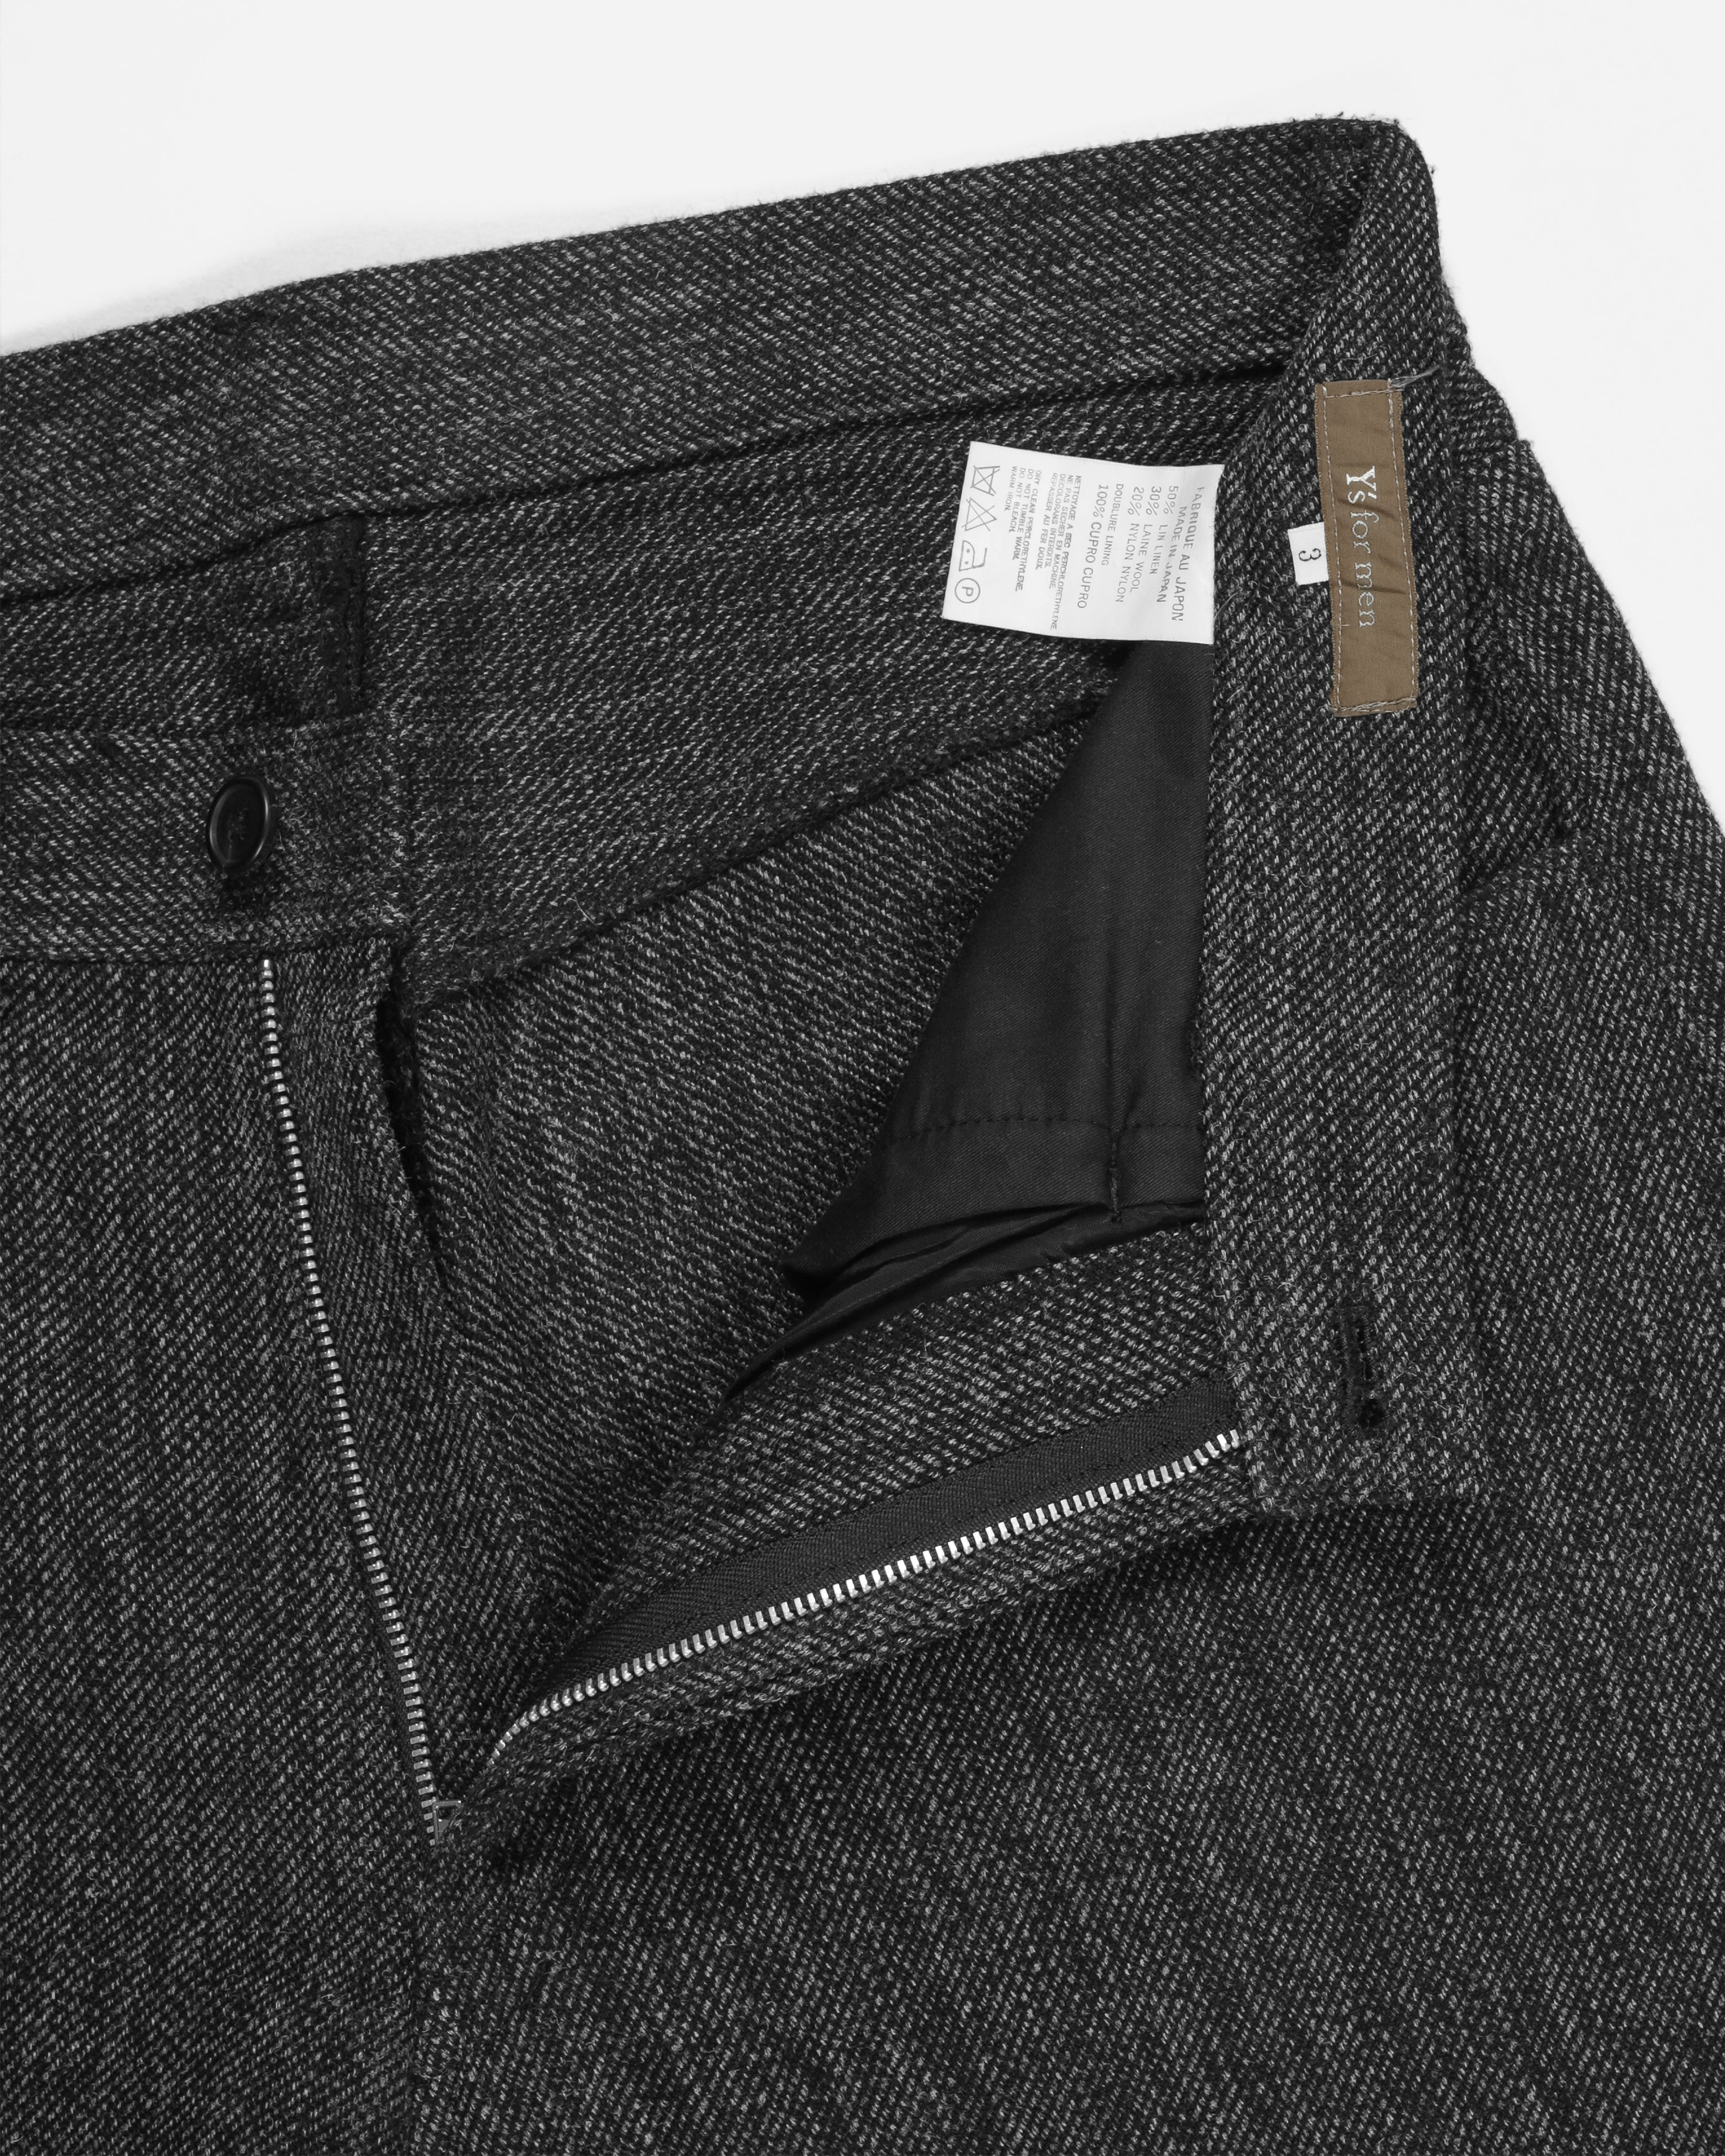 Yohji Yamamoto Y's Black Tweed Trousers - SILVER LEAGUE